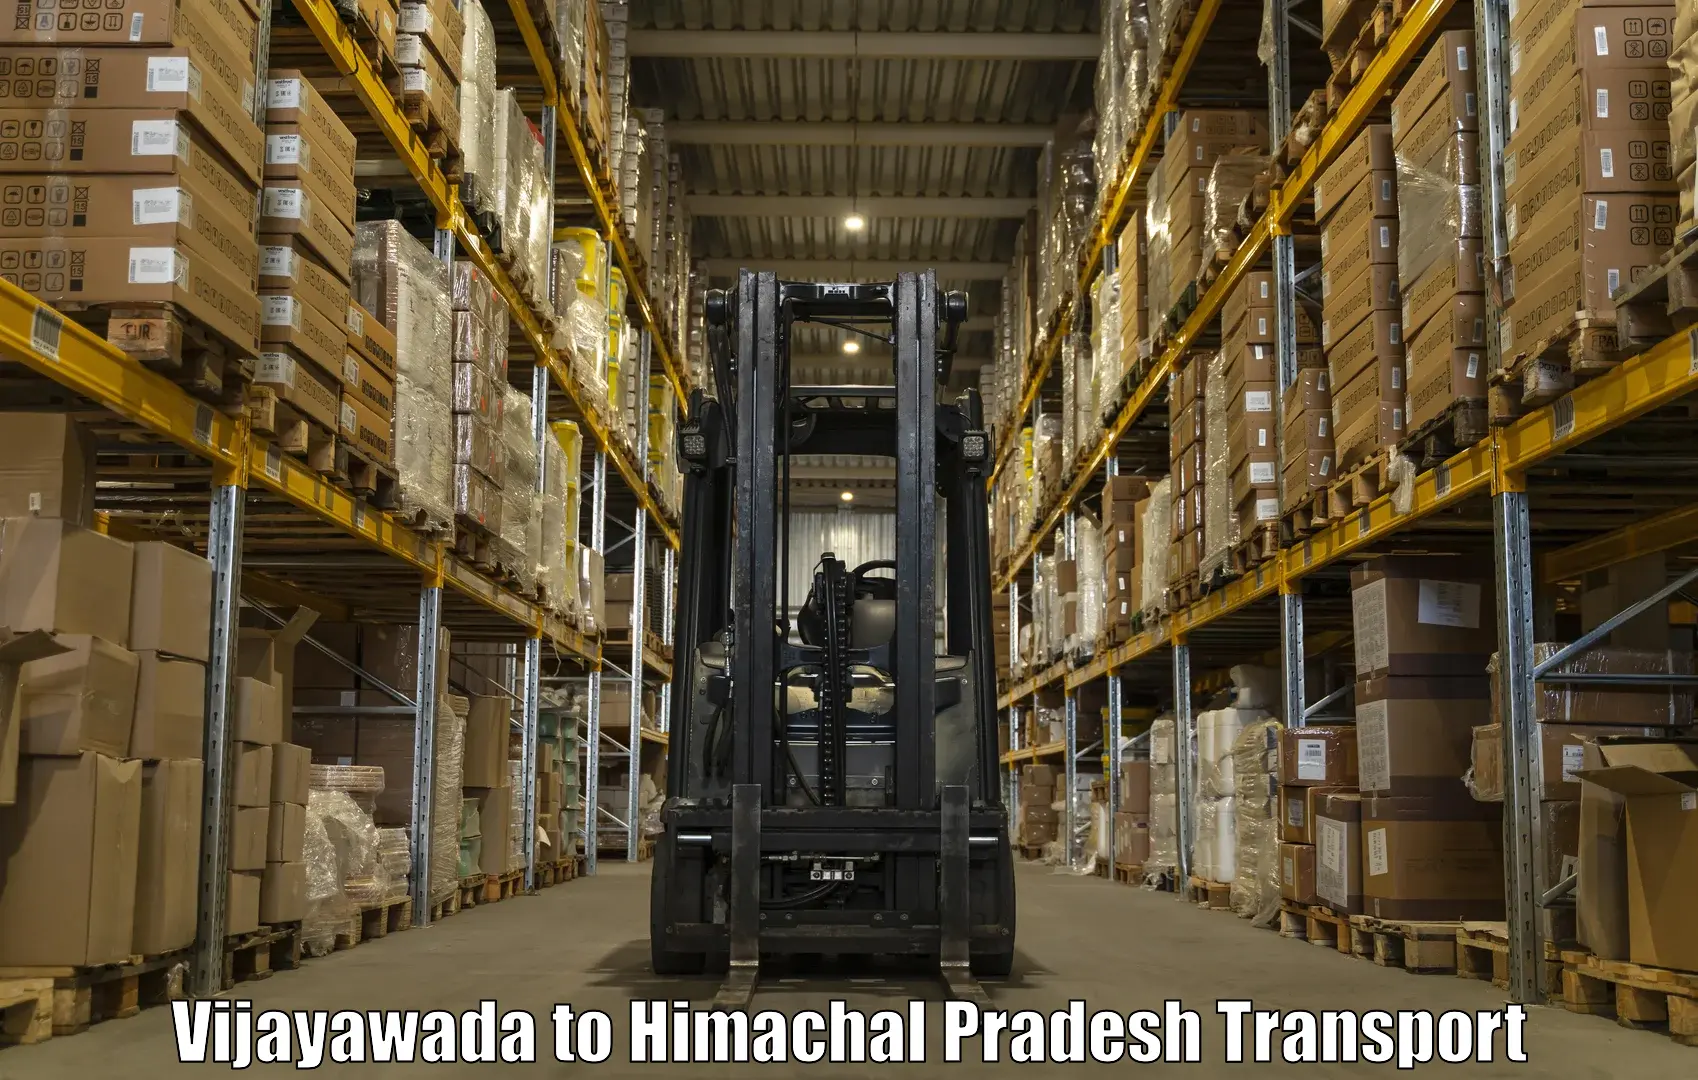 Shipping partner Vijayawada to Karsog